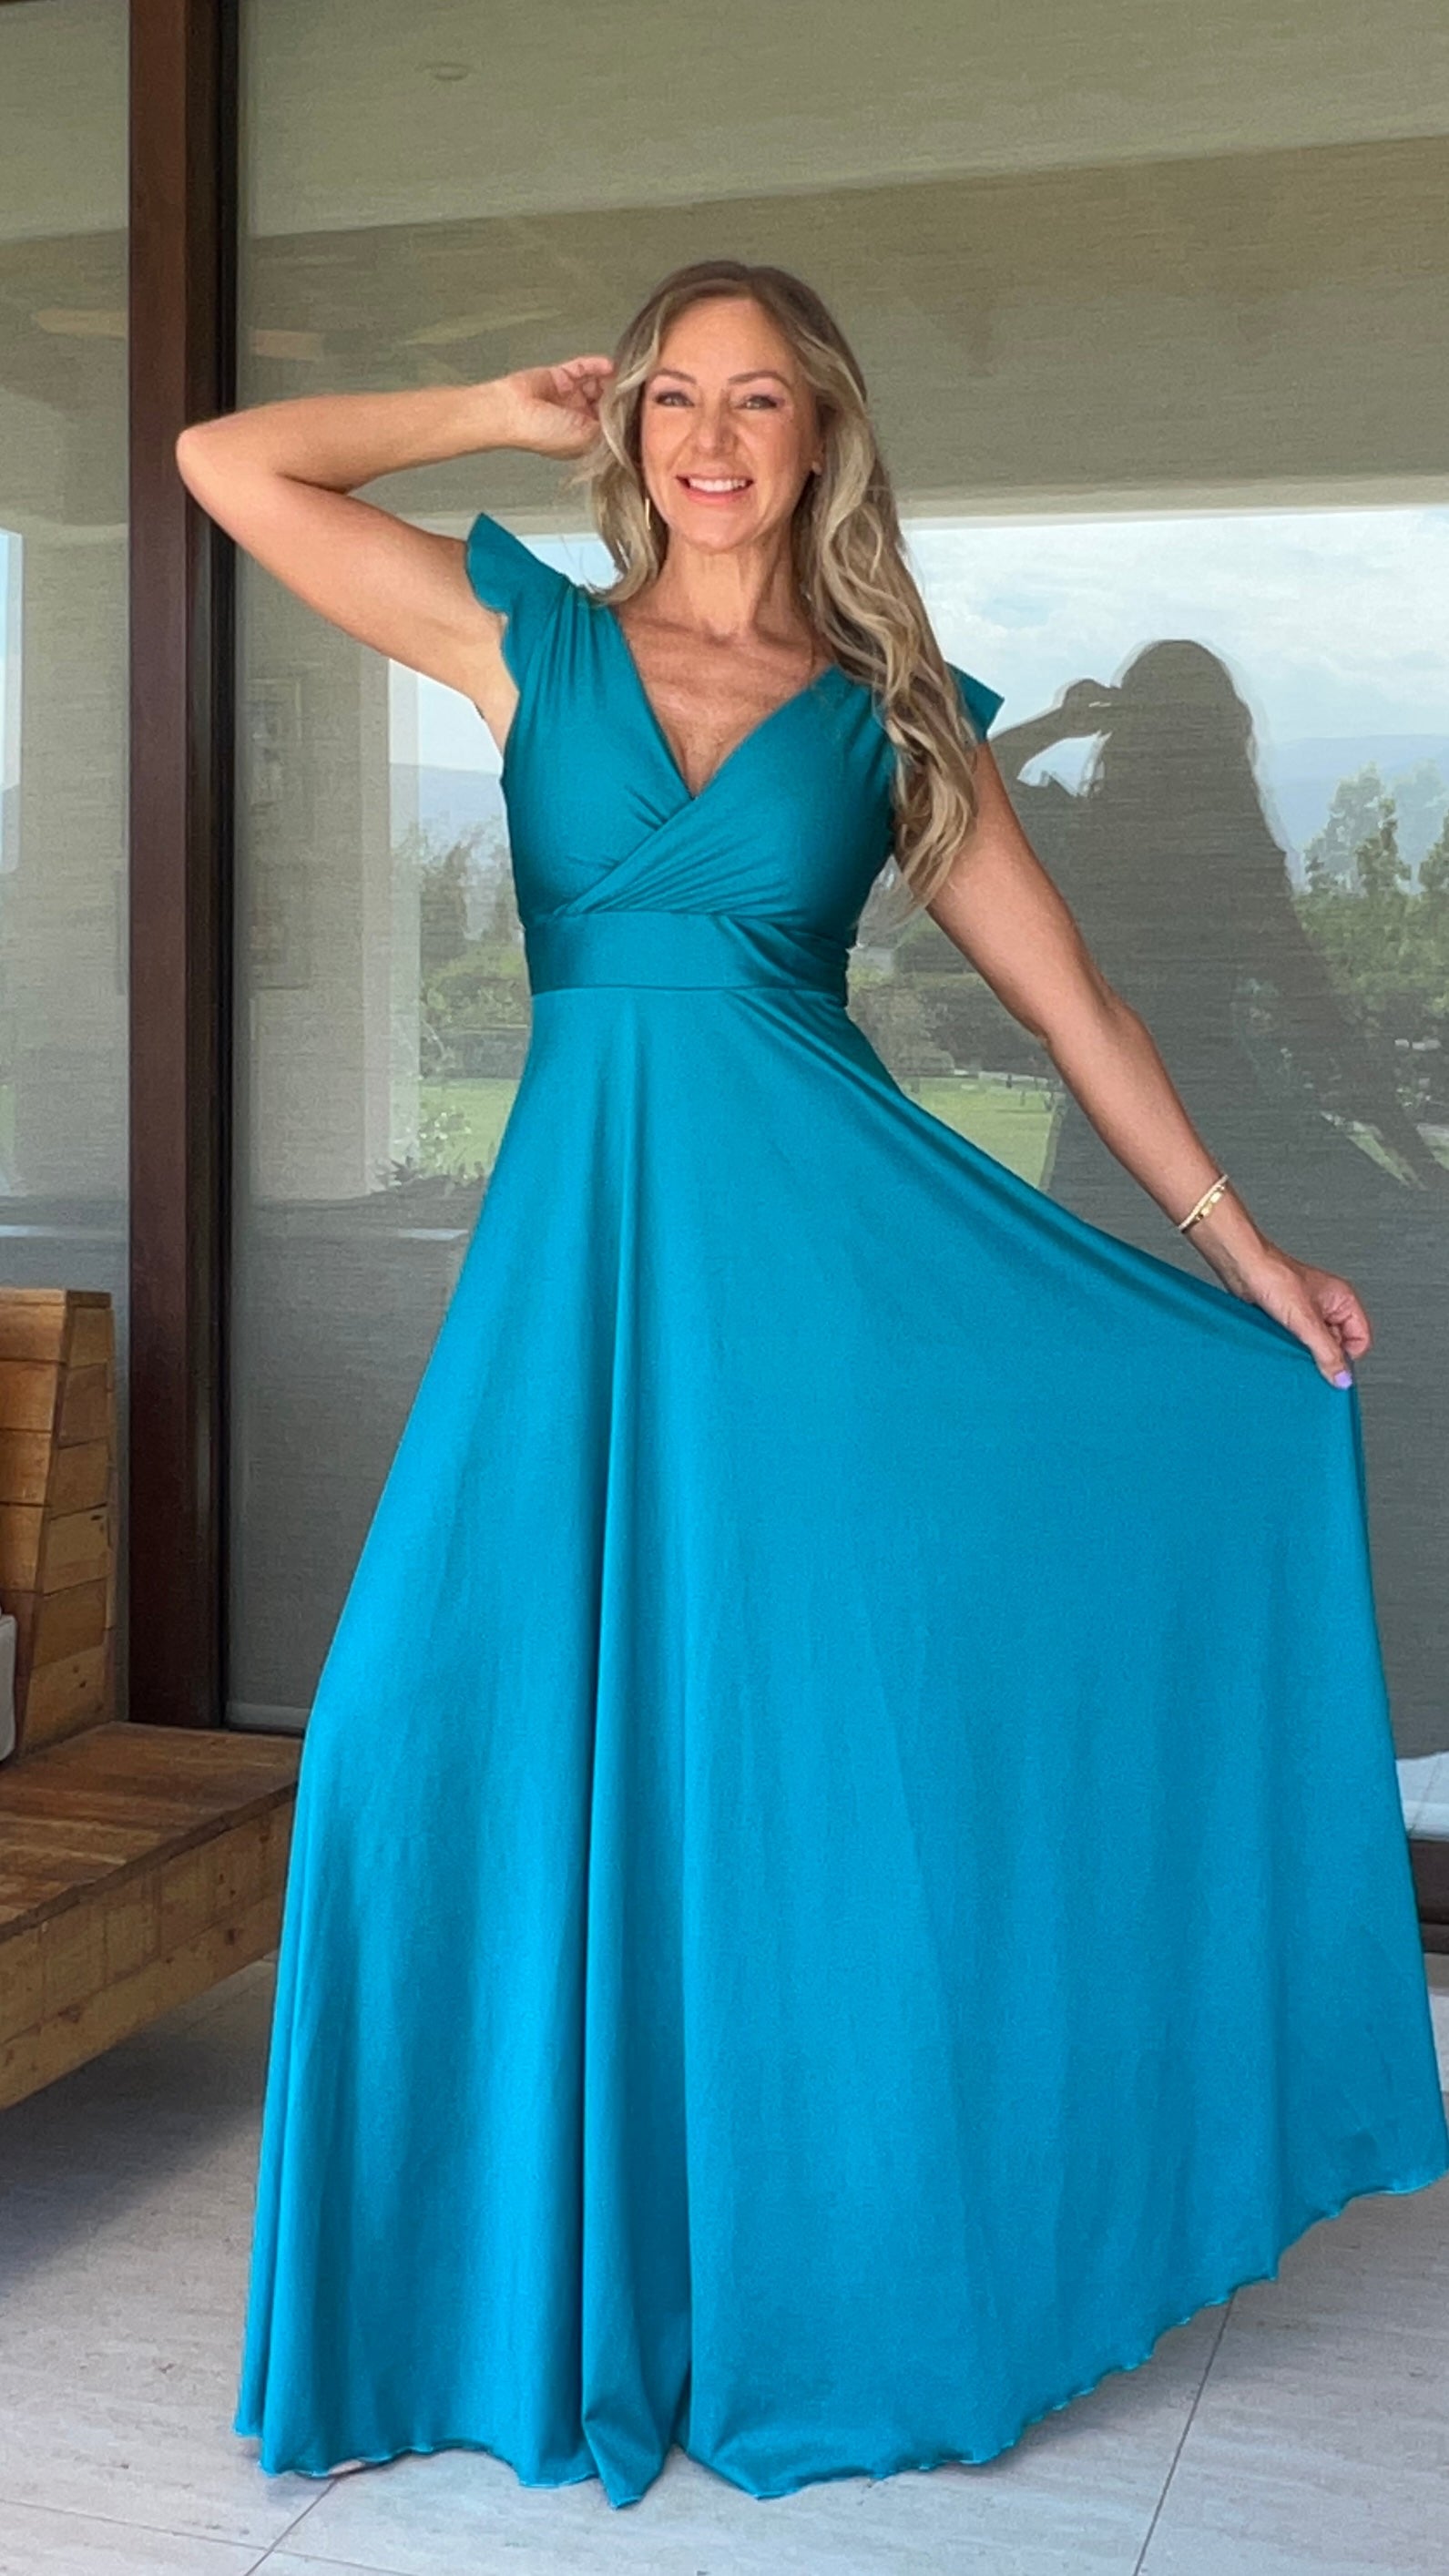 Vestido Isabella Dupont Azul Turquesa| Vestido Largo de Fiesta Calipso | Amoramar.cl